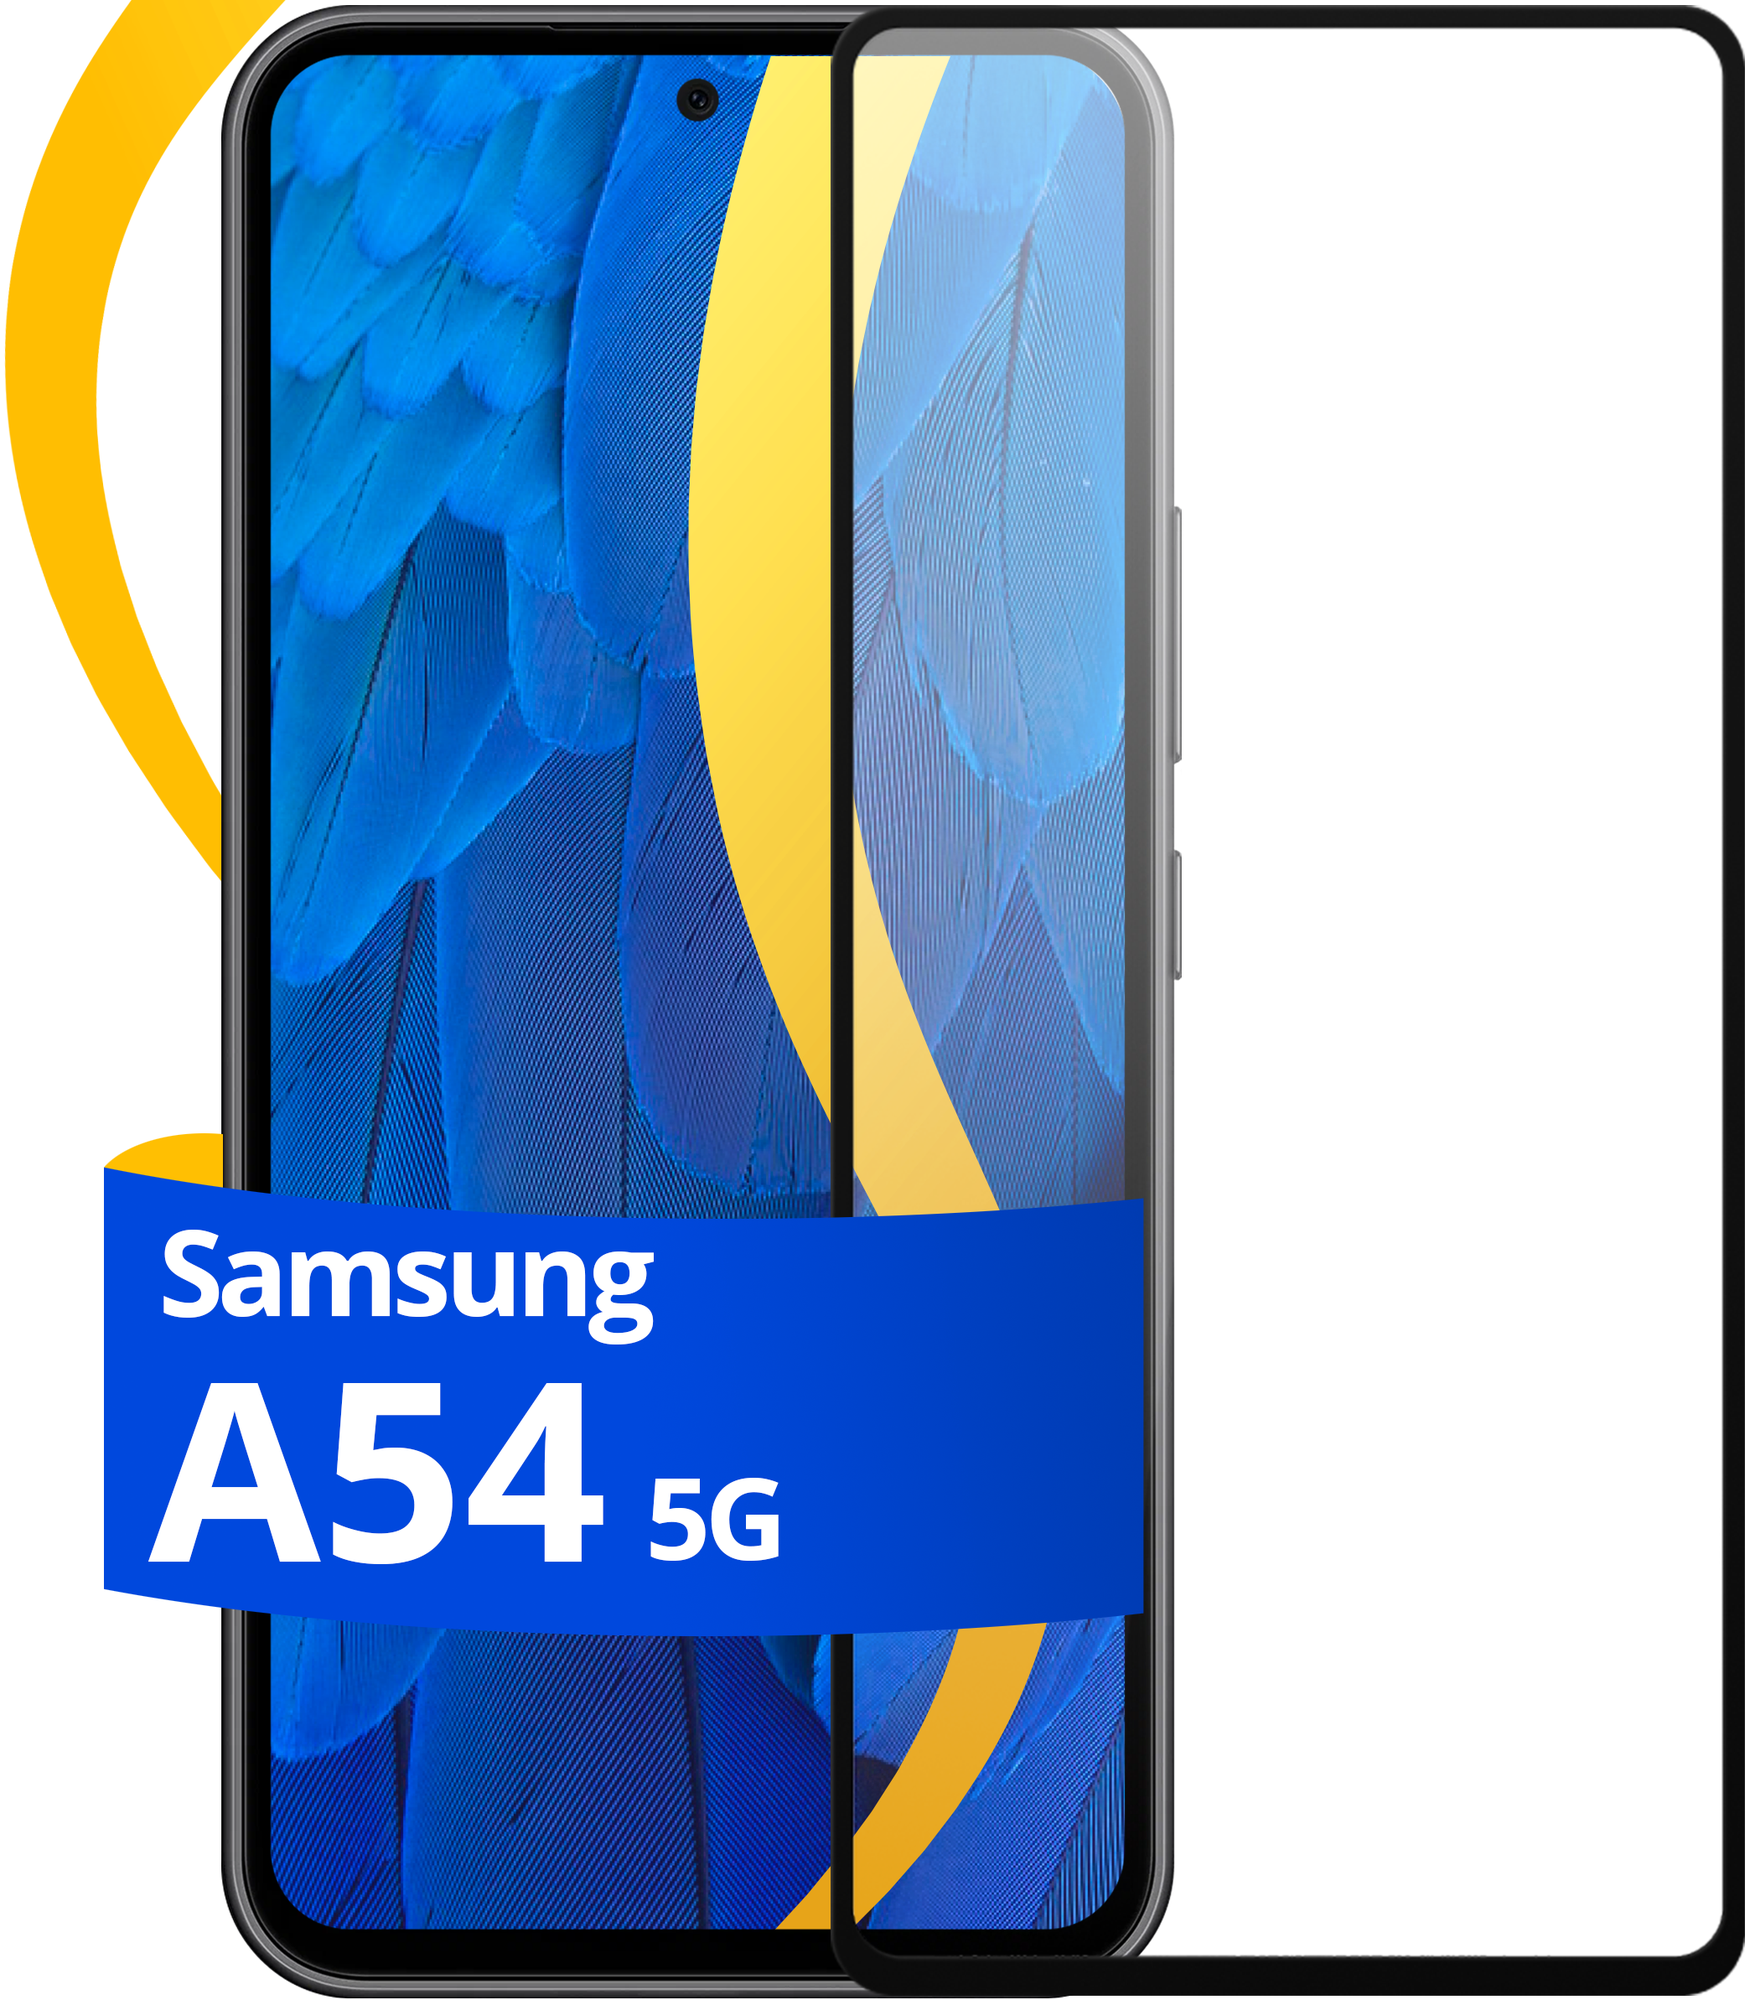 Комплект 2 шт защитное стекло для телефона Samsung Galaxy A54 5G / Набор противоударных стекол на смартфон Самсунг Галакси A54 5Г